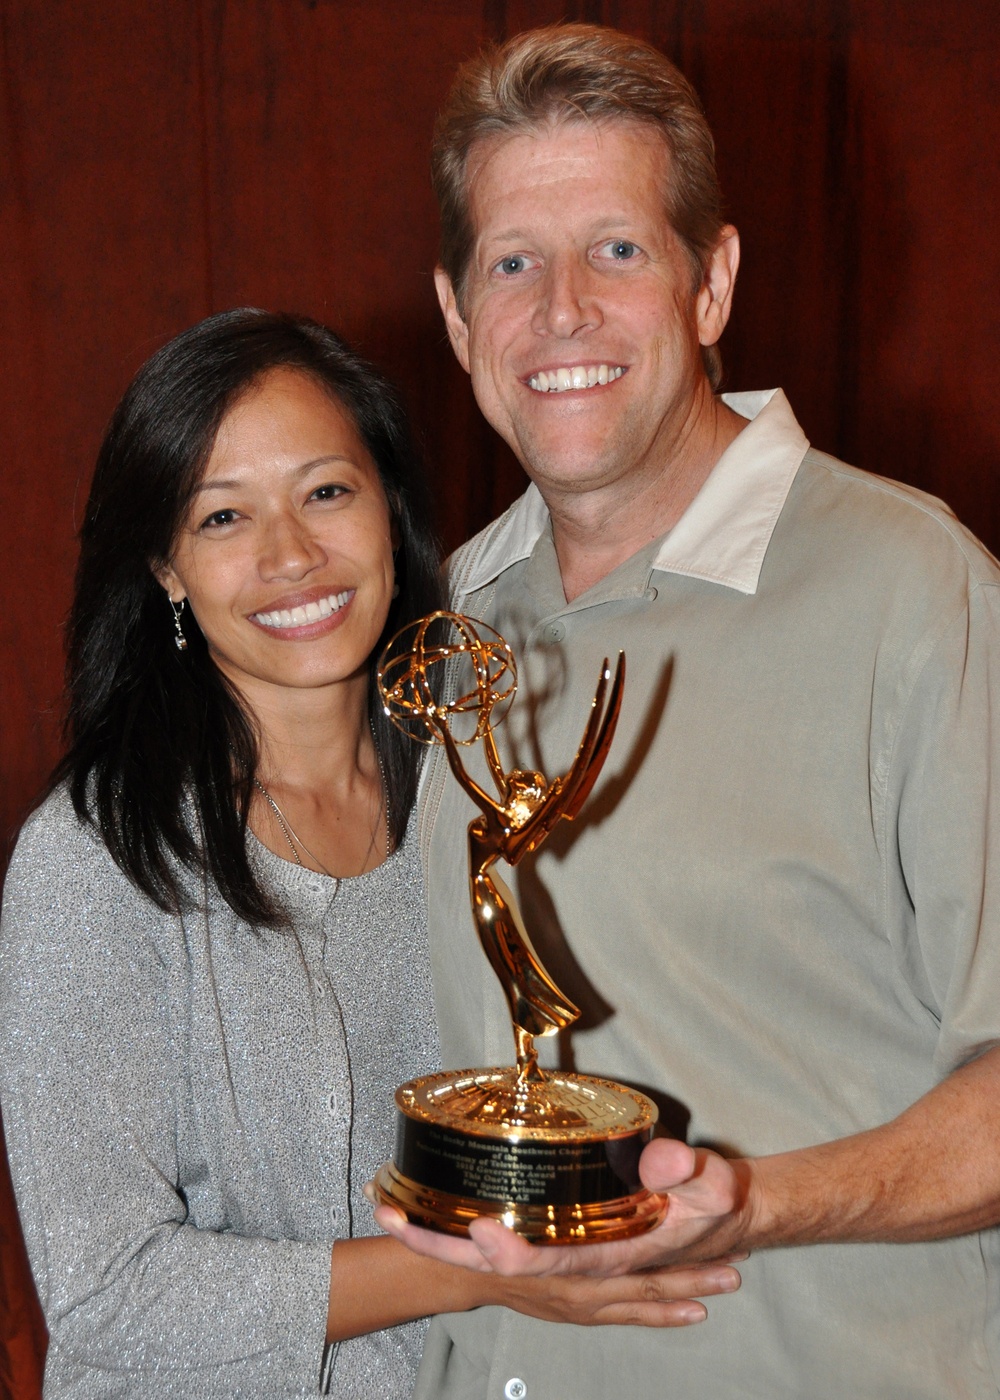 Arizona National Guard Stars in Emmy-winning Fox Sports Broadcast